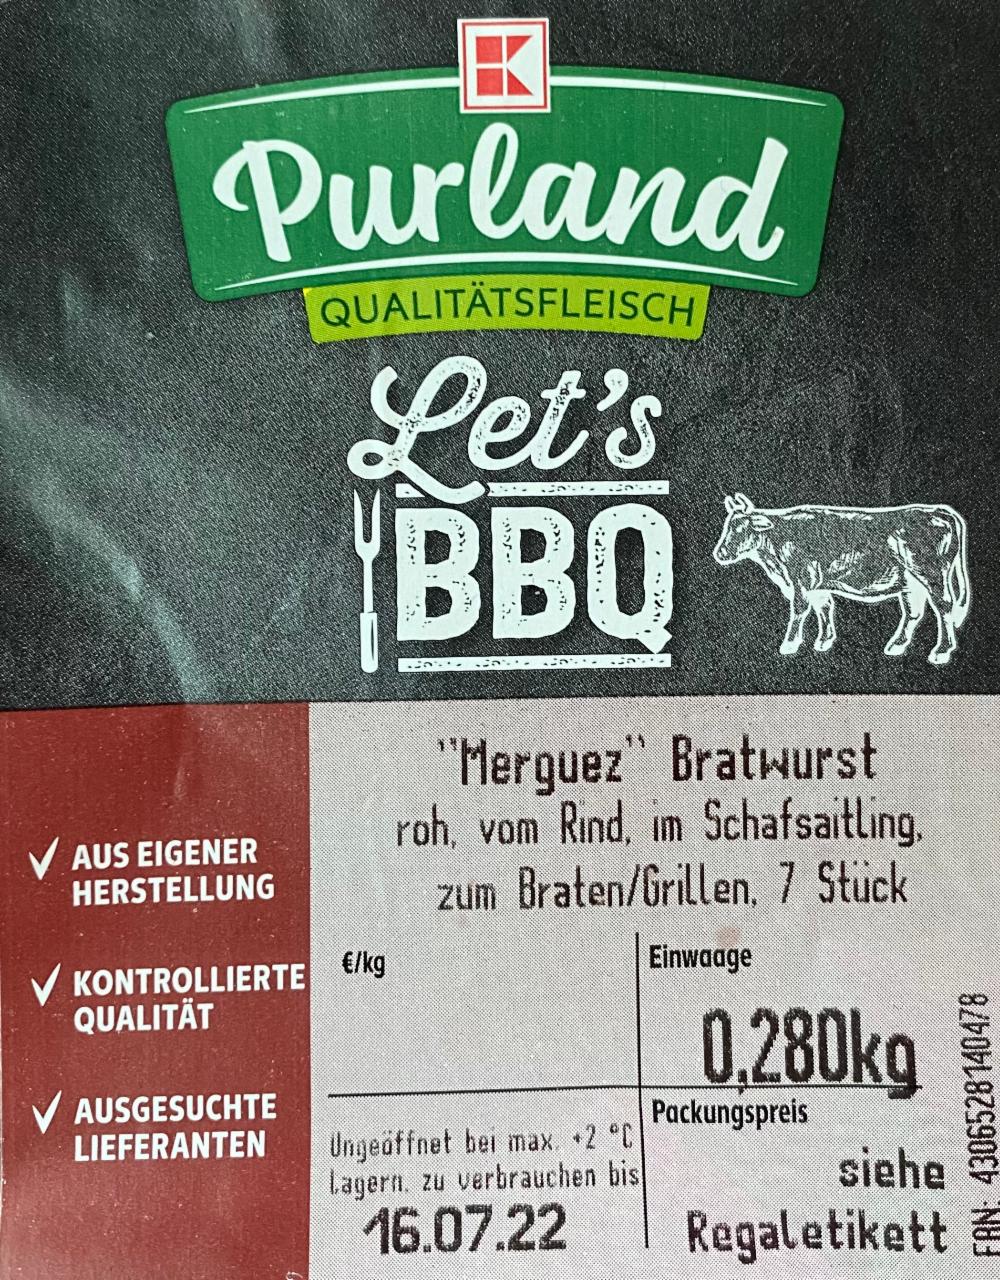 Fotografie - Let's BBQ Merguez Bratwurst Purland